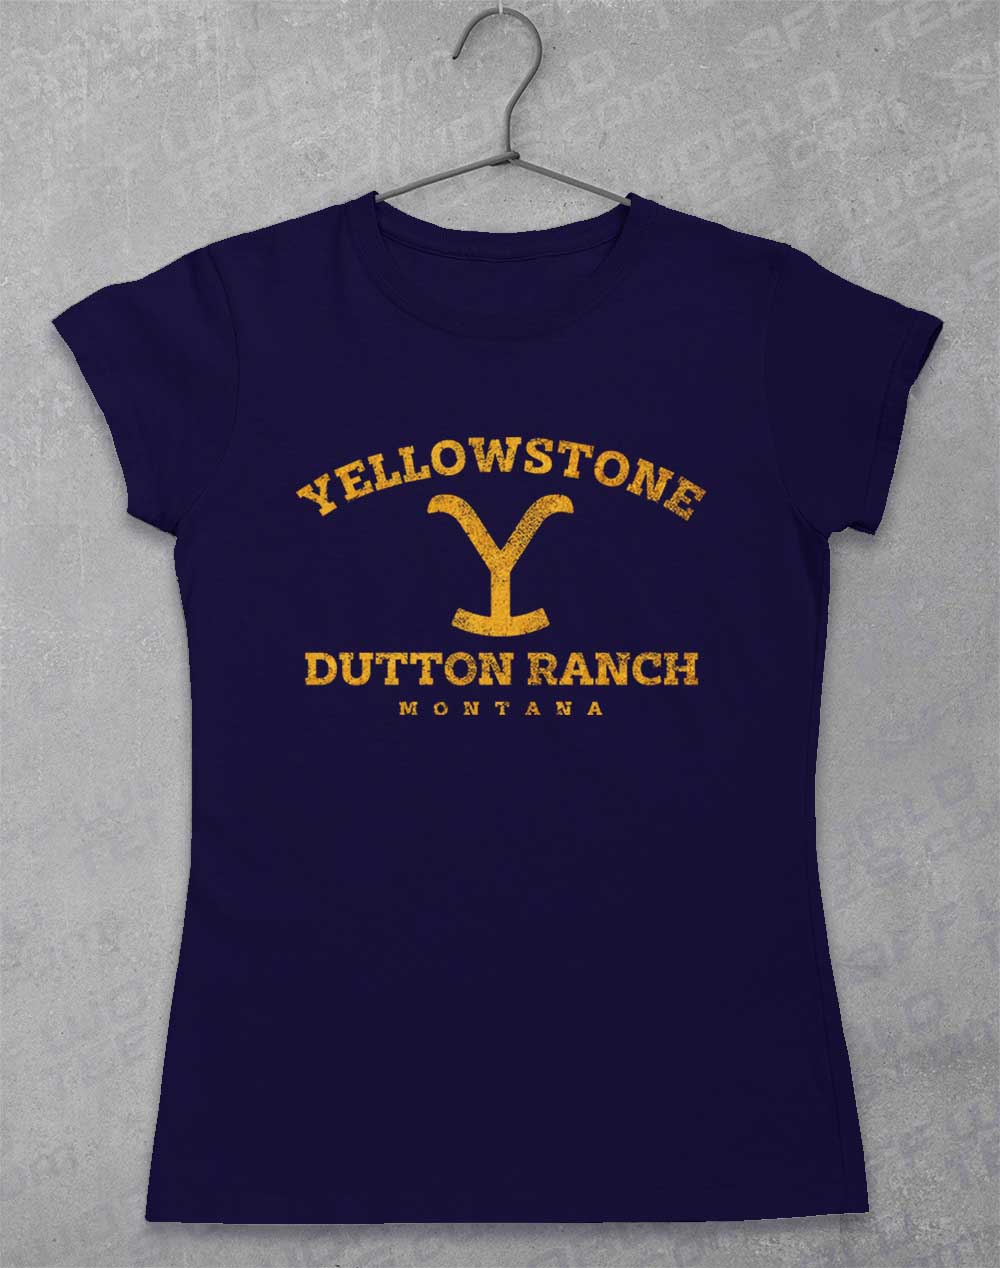 Navy - Dutton Ranch Montana Women's T-Shirt